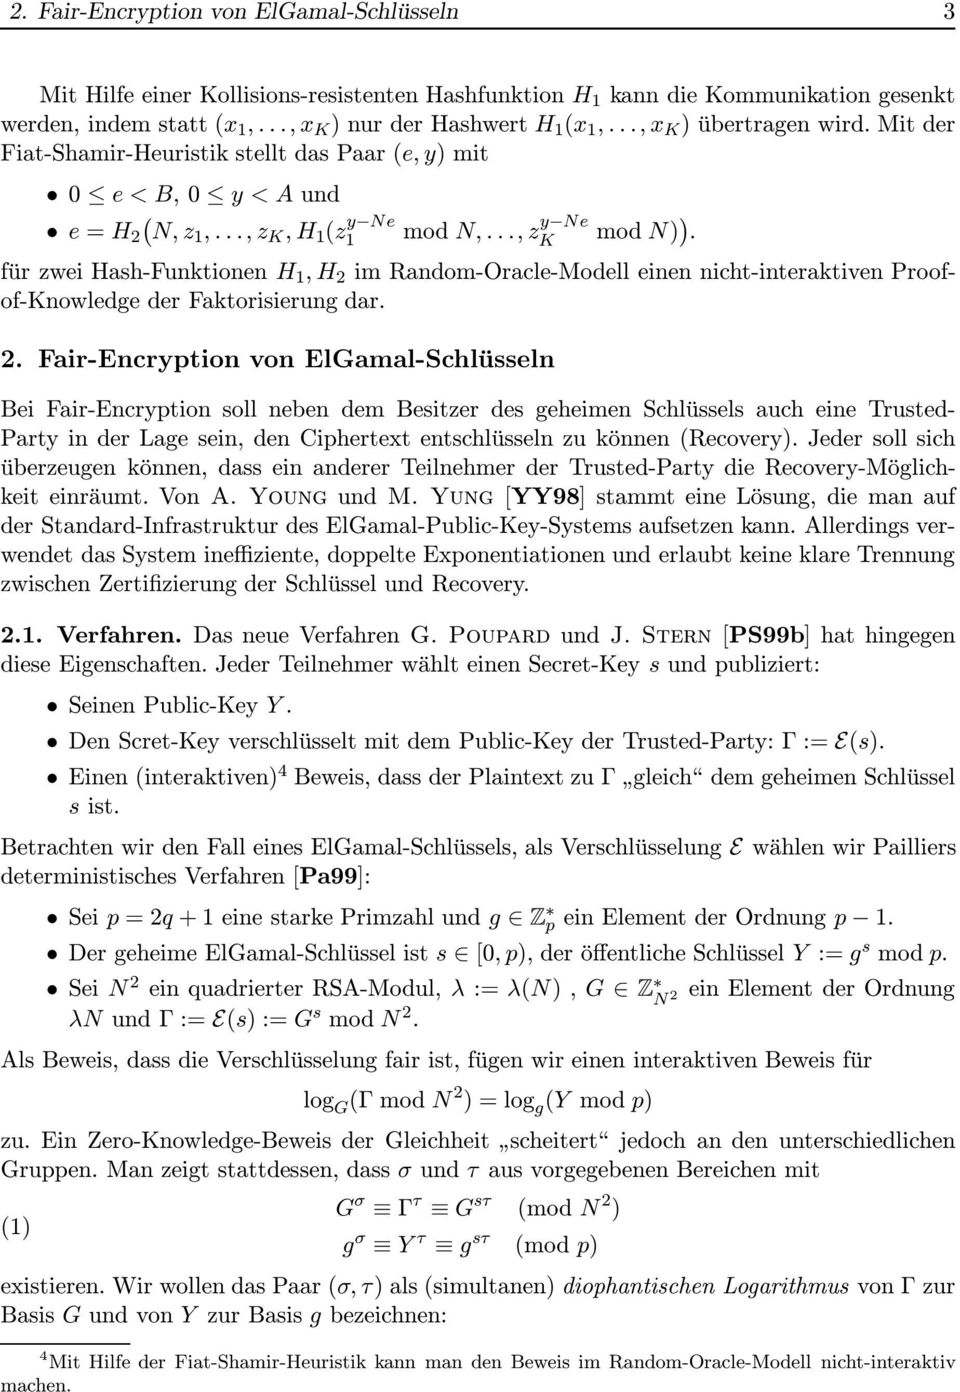 für zwe Hash-Funktonen H 1,H m Random-Oracle-Modell enen ncht-nteraktven Proofof-Knowledge der Faktorserung dar.